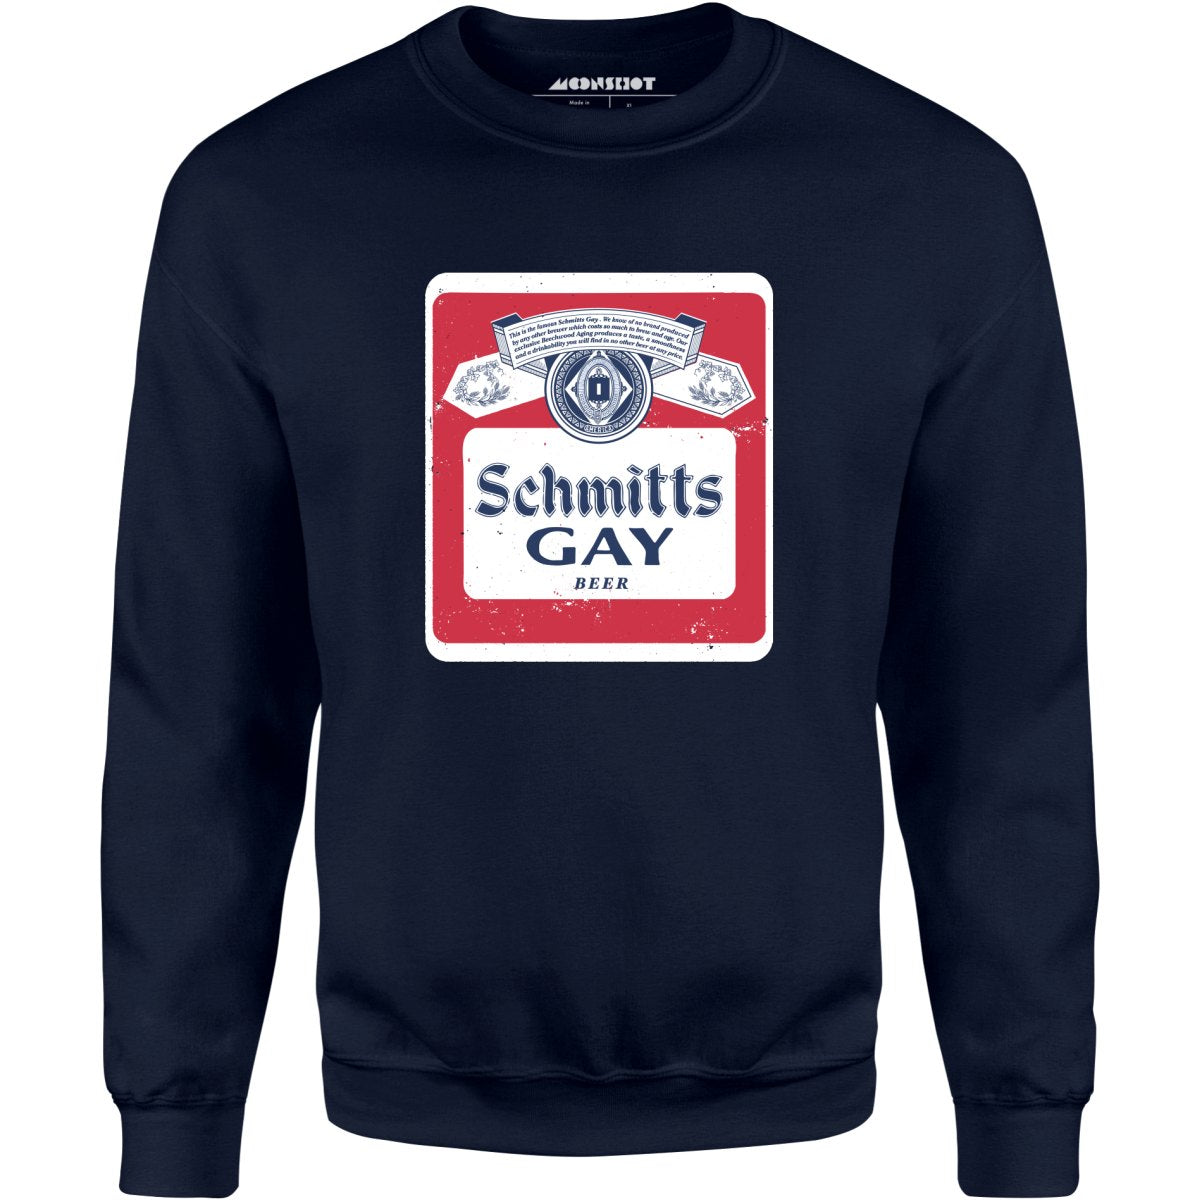 Schmitts Gay Beer - Unisex Sweatshirt